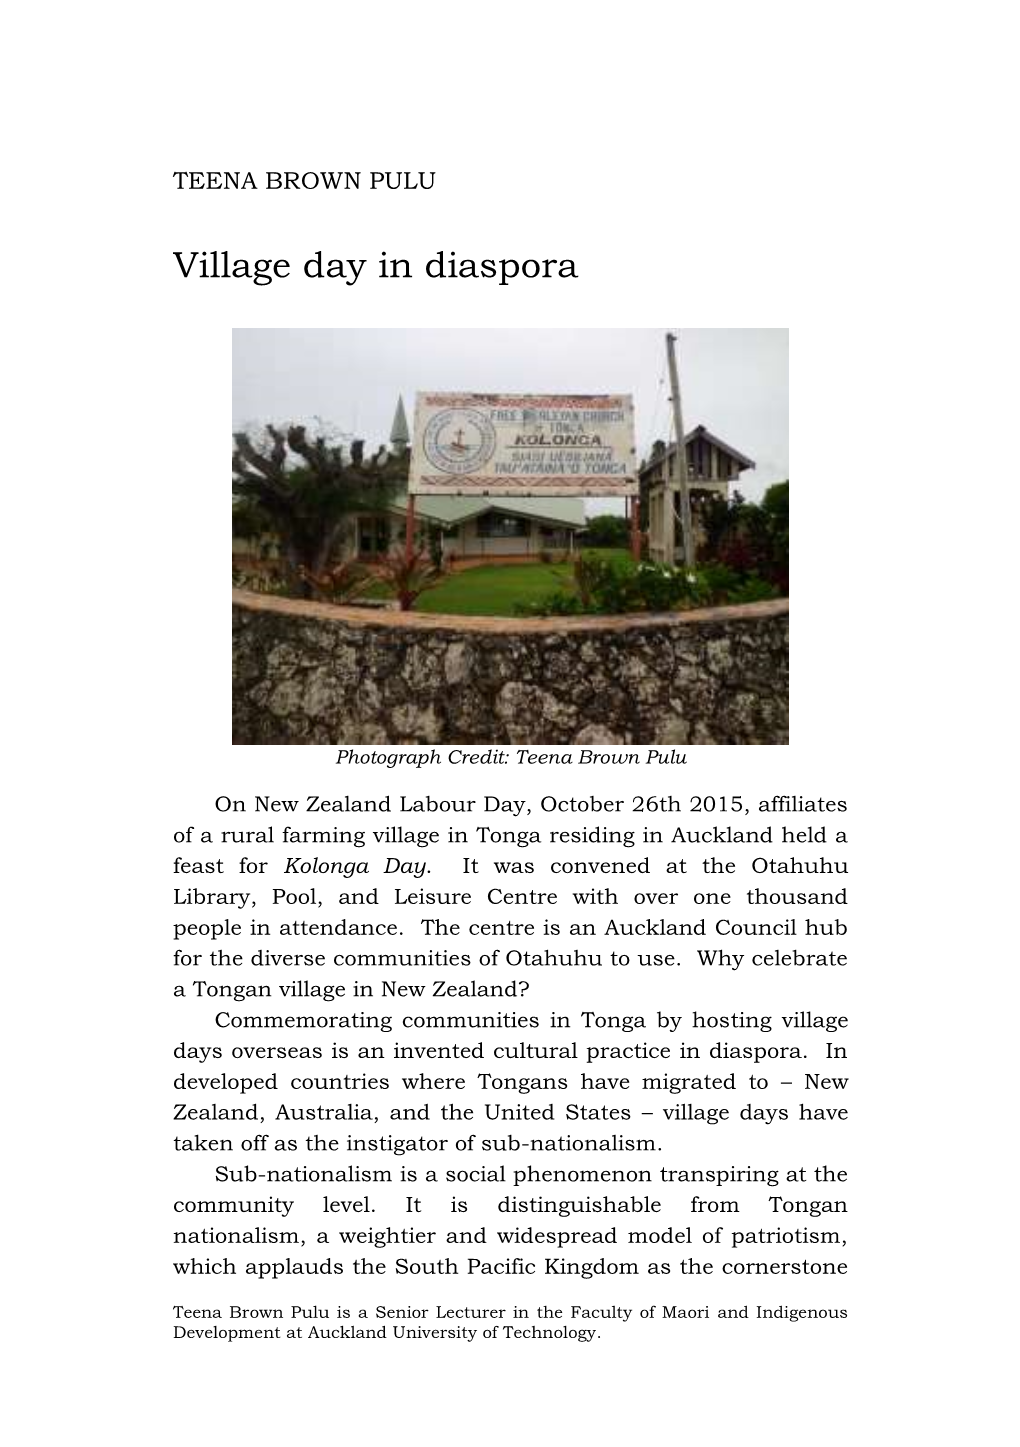 Village Day in Diaspora